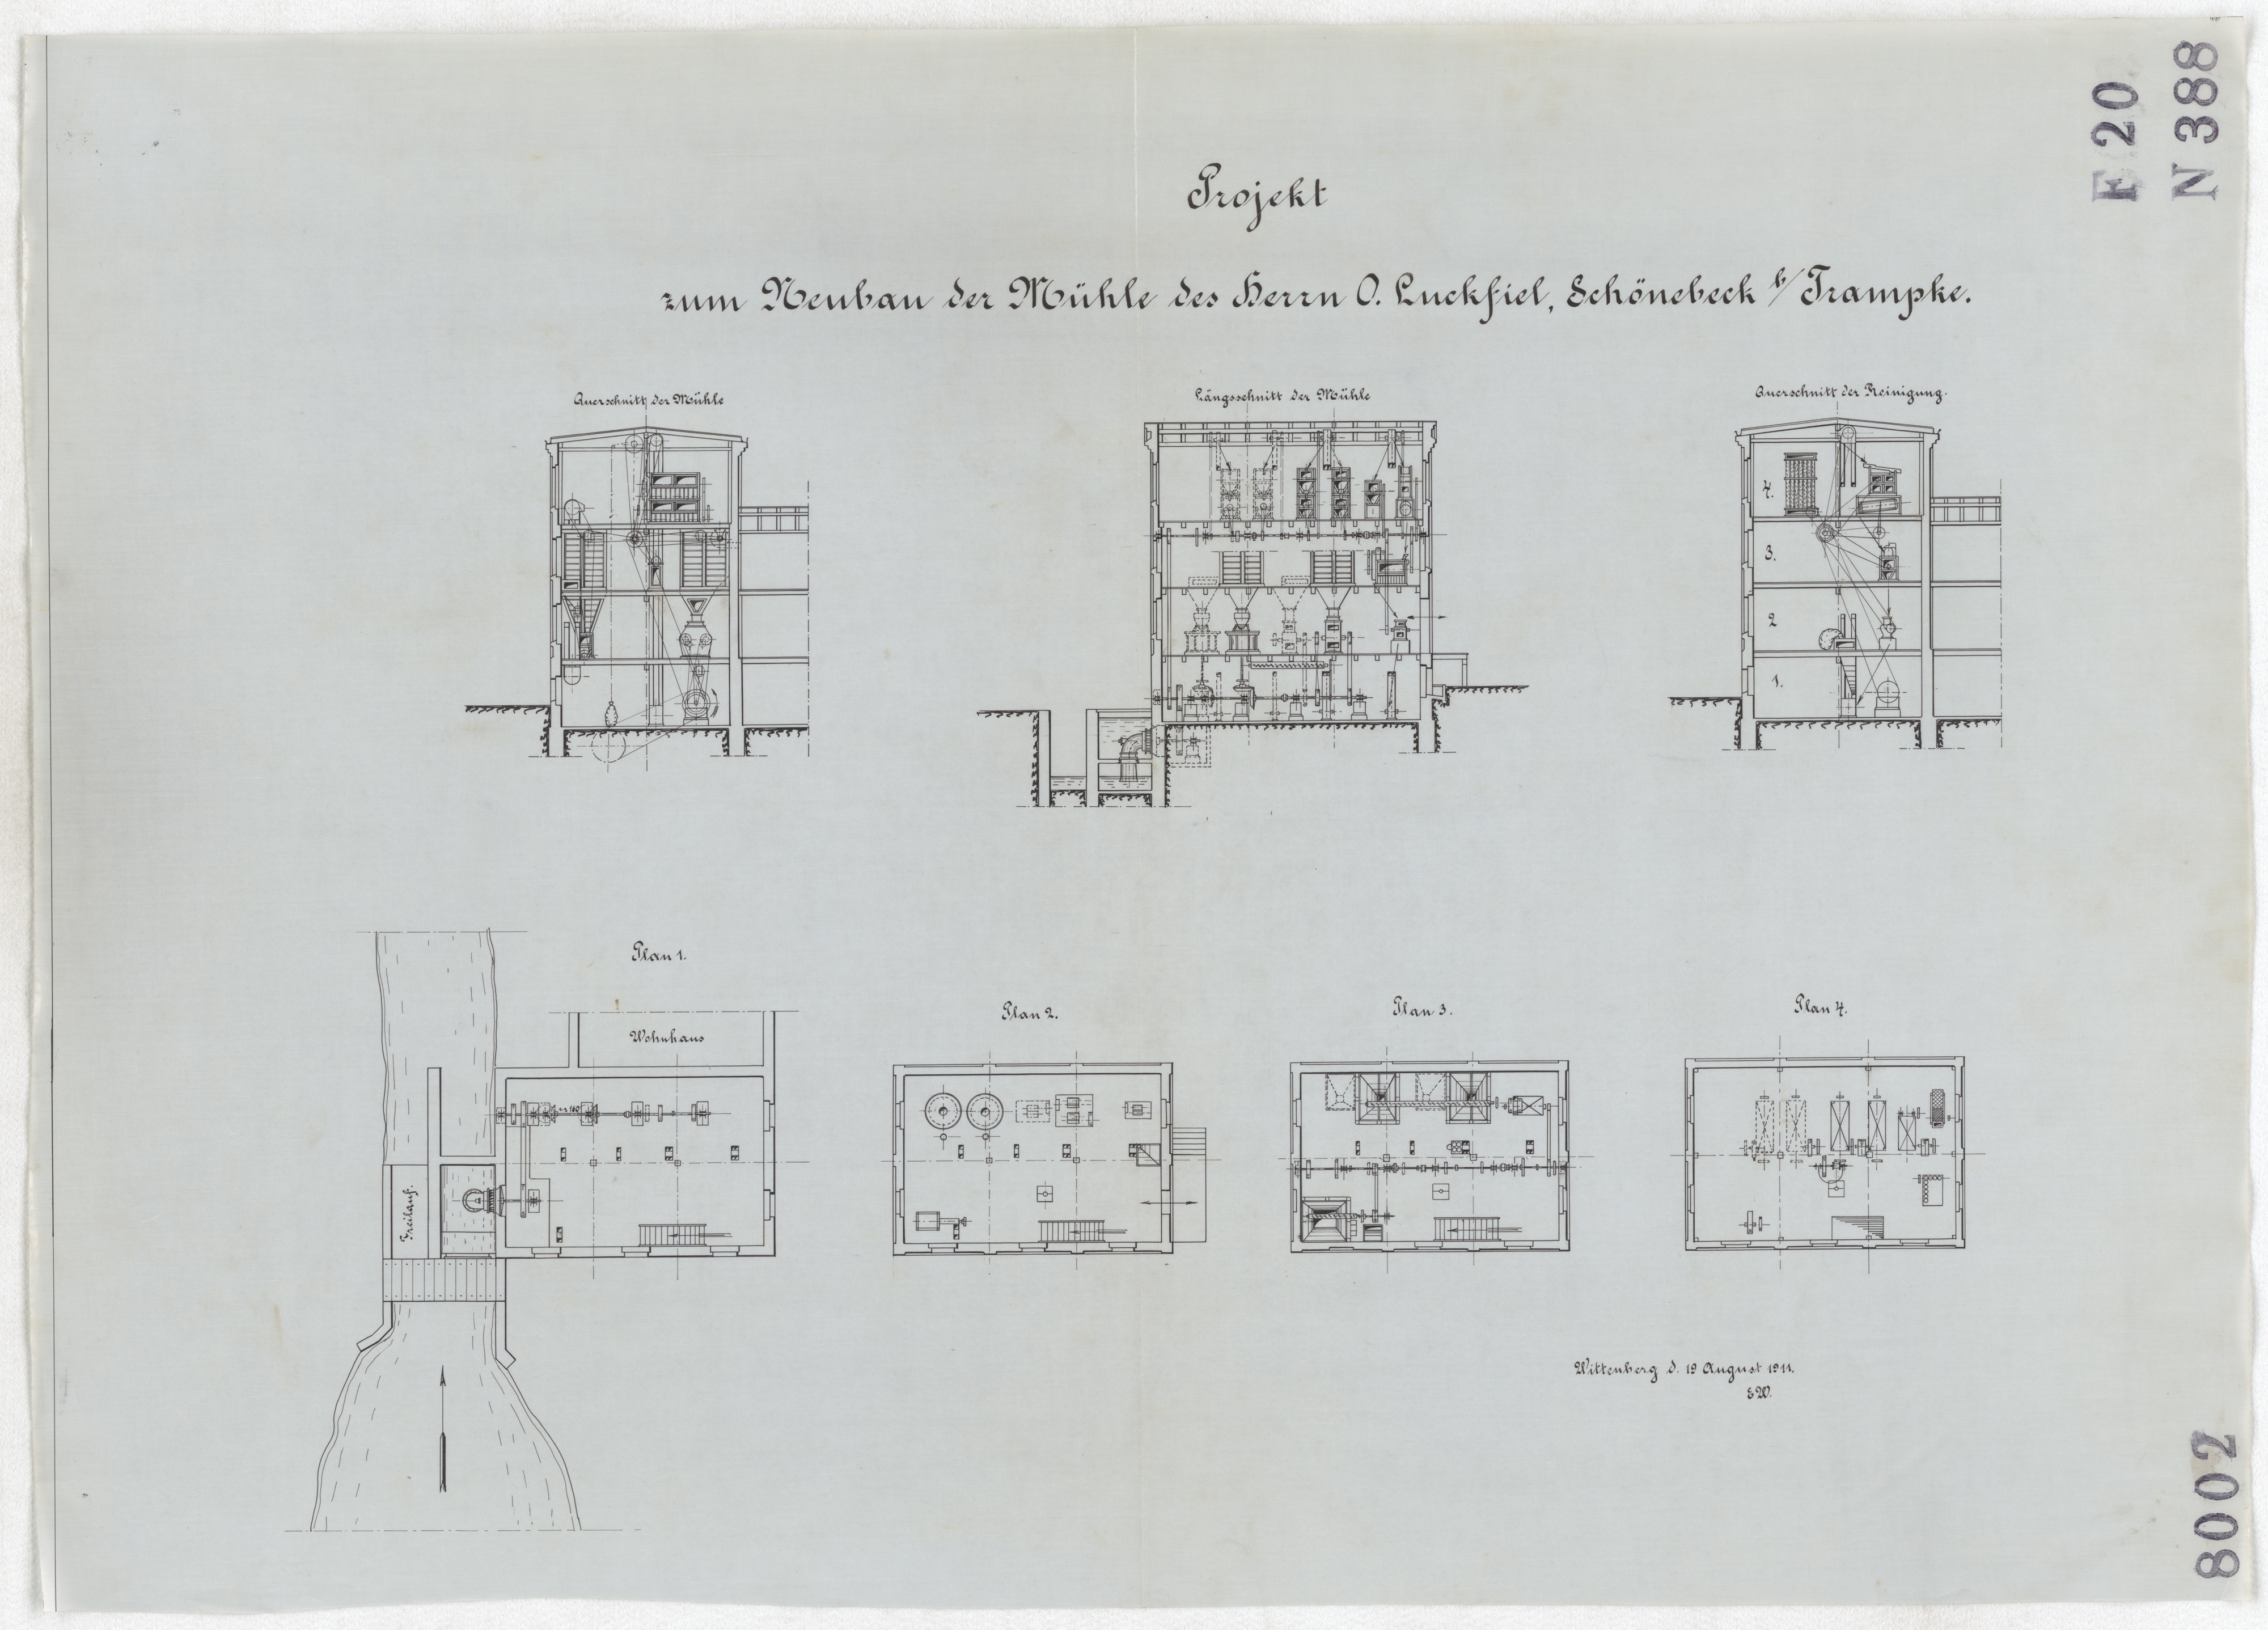 Technische Zeichnung : Projekt zum Neubau der Mühle des Herrn O. Luckfiel, Schönebeck bei Trampke (Stiftung Deutsches Technikmuseum Berlin CC BY-SA)